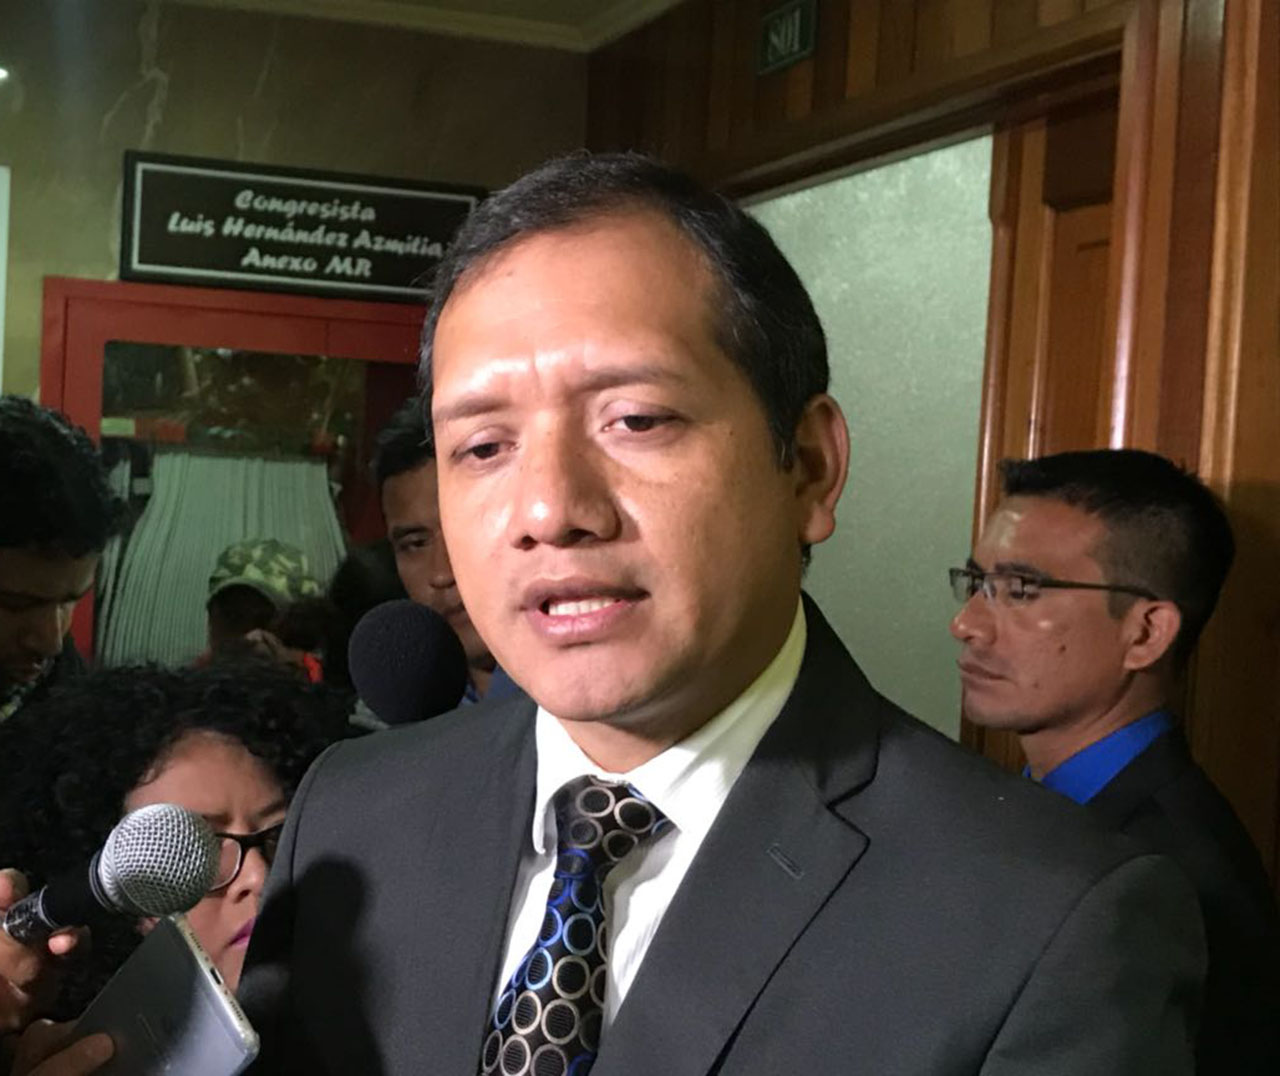 "La decisión de optar al cargo del MP, no la he tomado de momento" dice el ministro de Gobernación